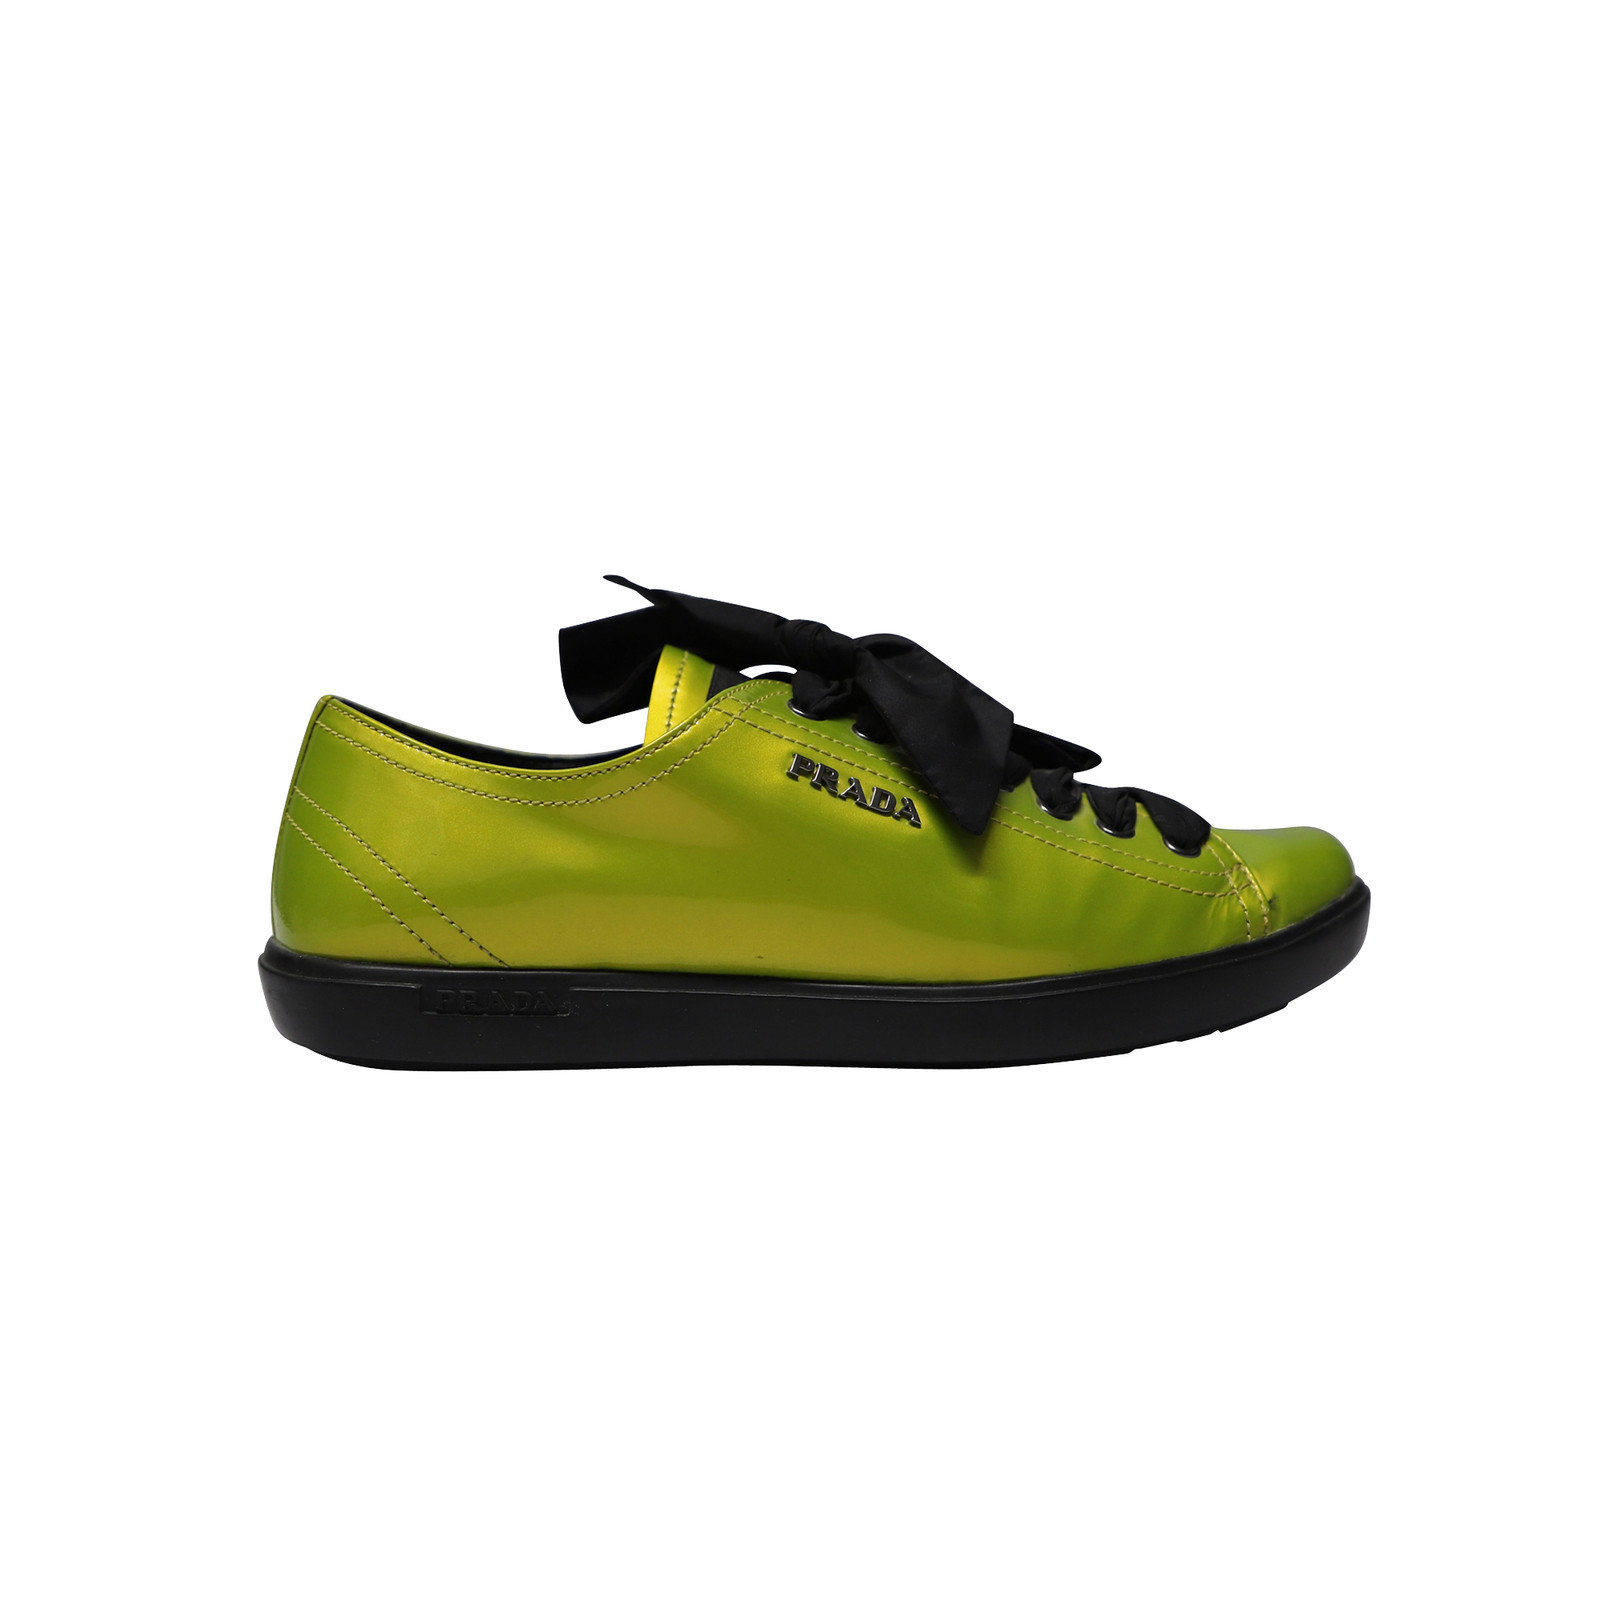 PRADA Donna Sneakers aus Leder in Grün Taglia: EU 37